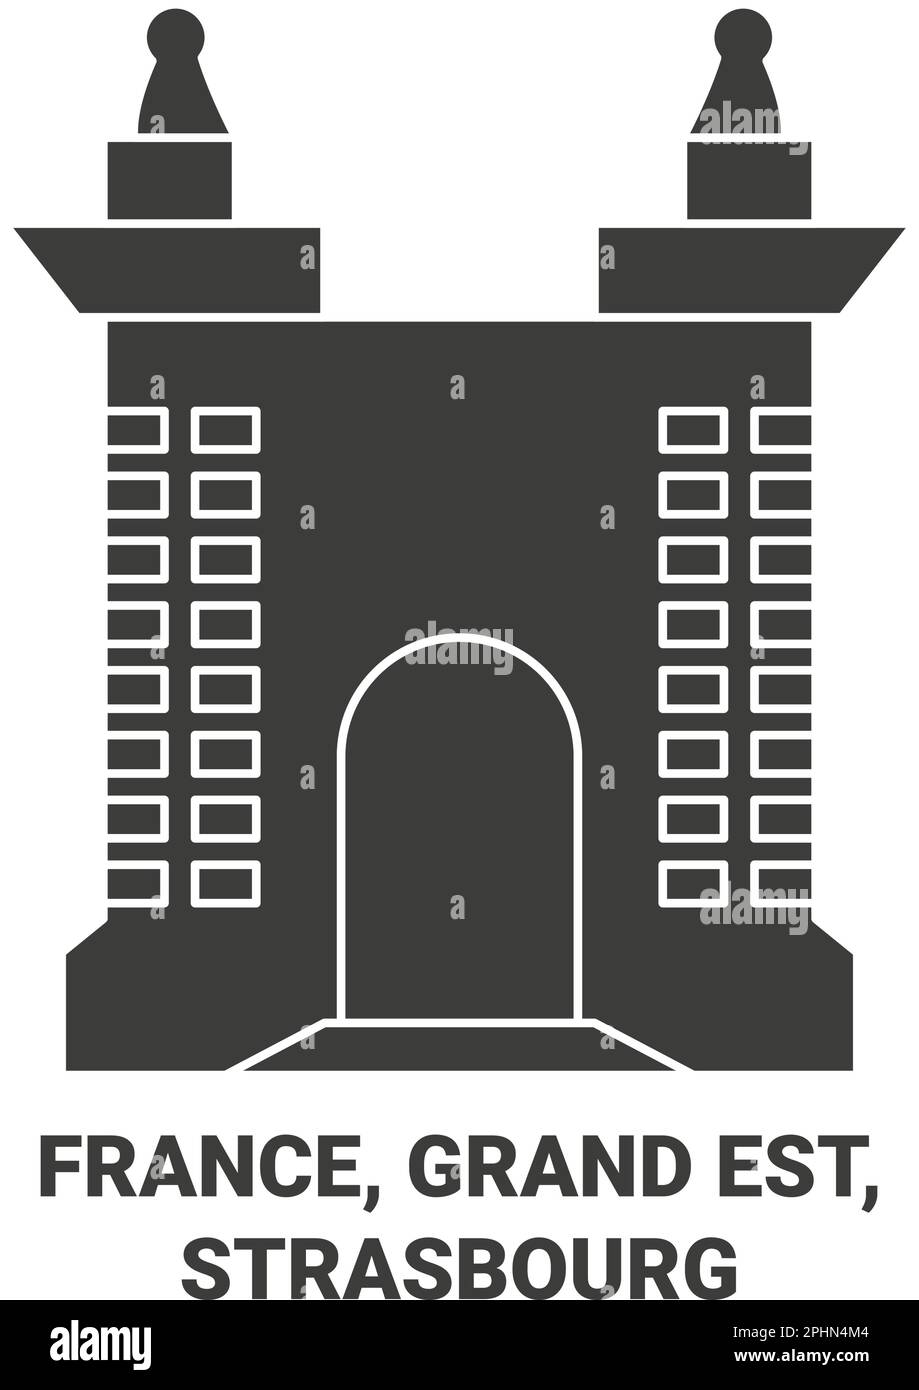 France, Grand Est, Strasbourg travel landmark vector illustration Stock Vector